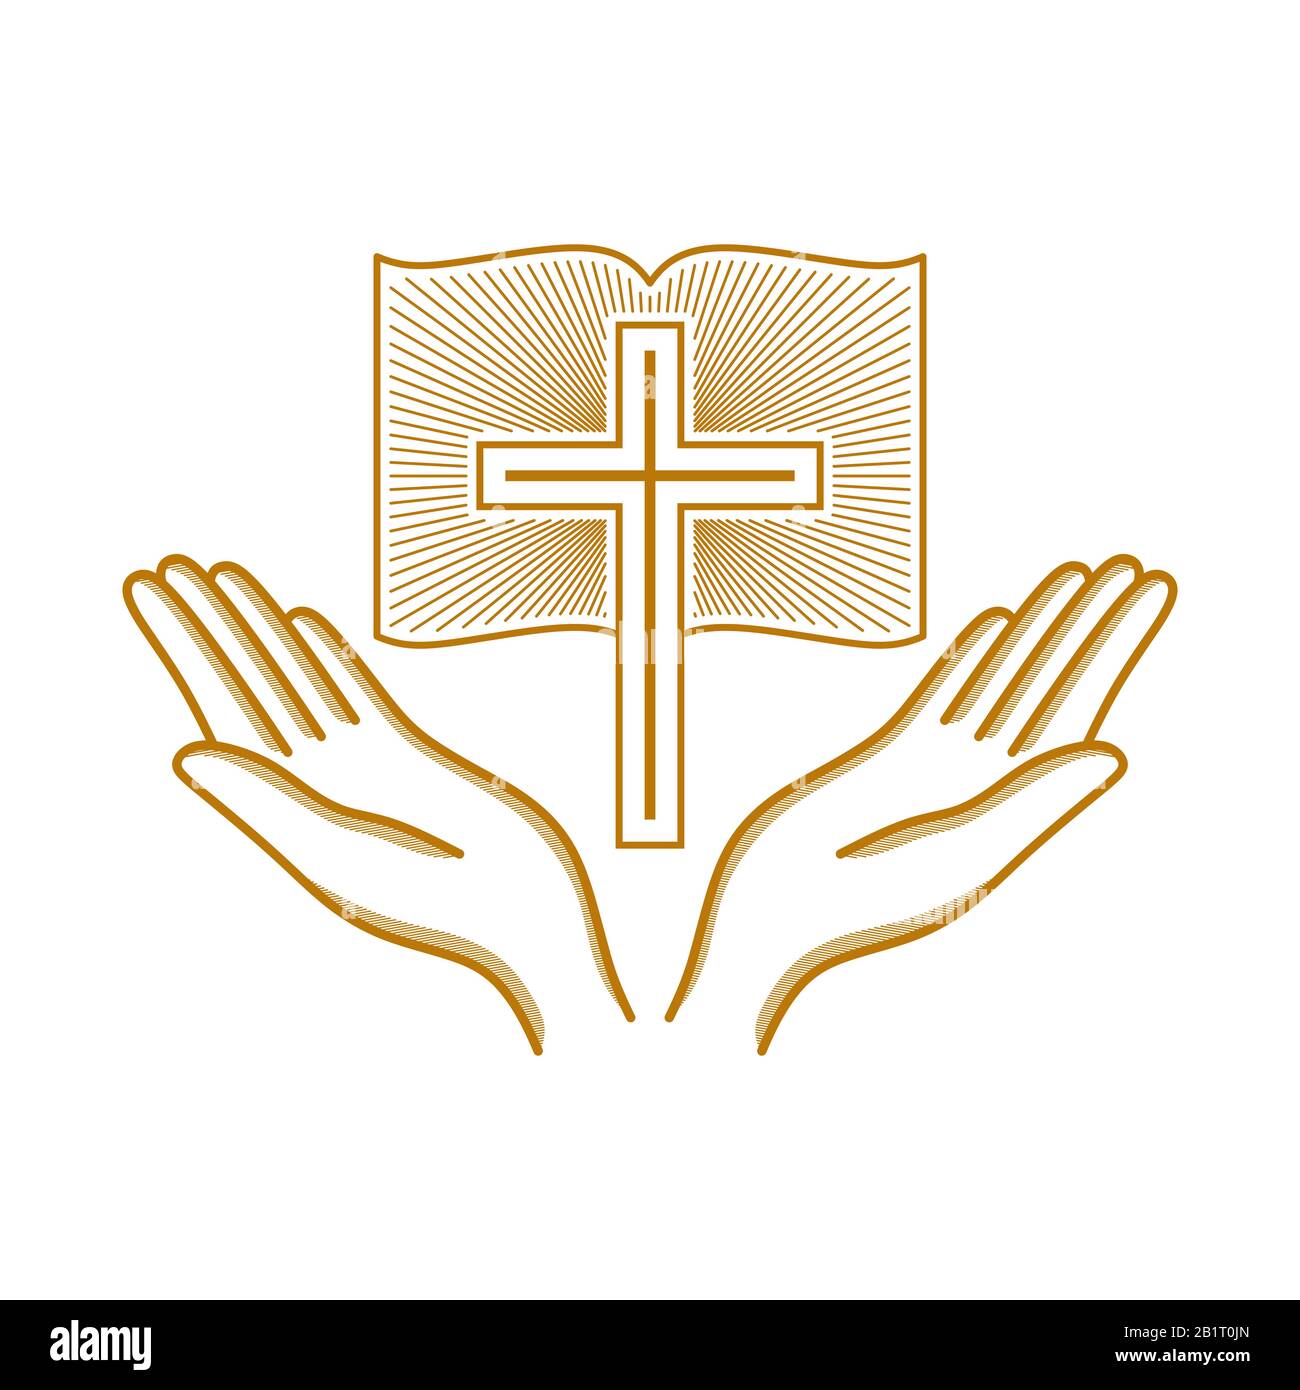 Kirchenlogo. Christliche Symbole. Hände, die zum Kreuz des Herrn Jesus Christus erhoben wurden. Stock Vektor